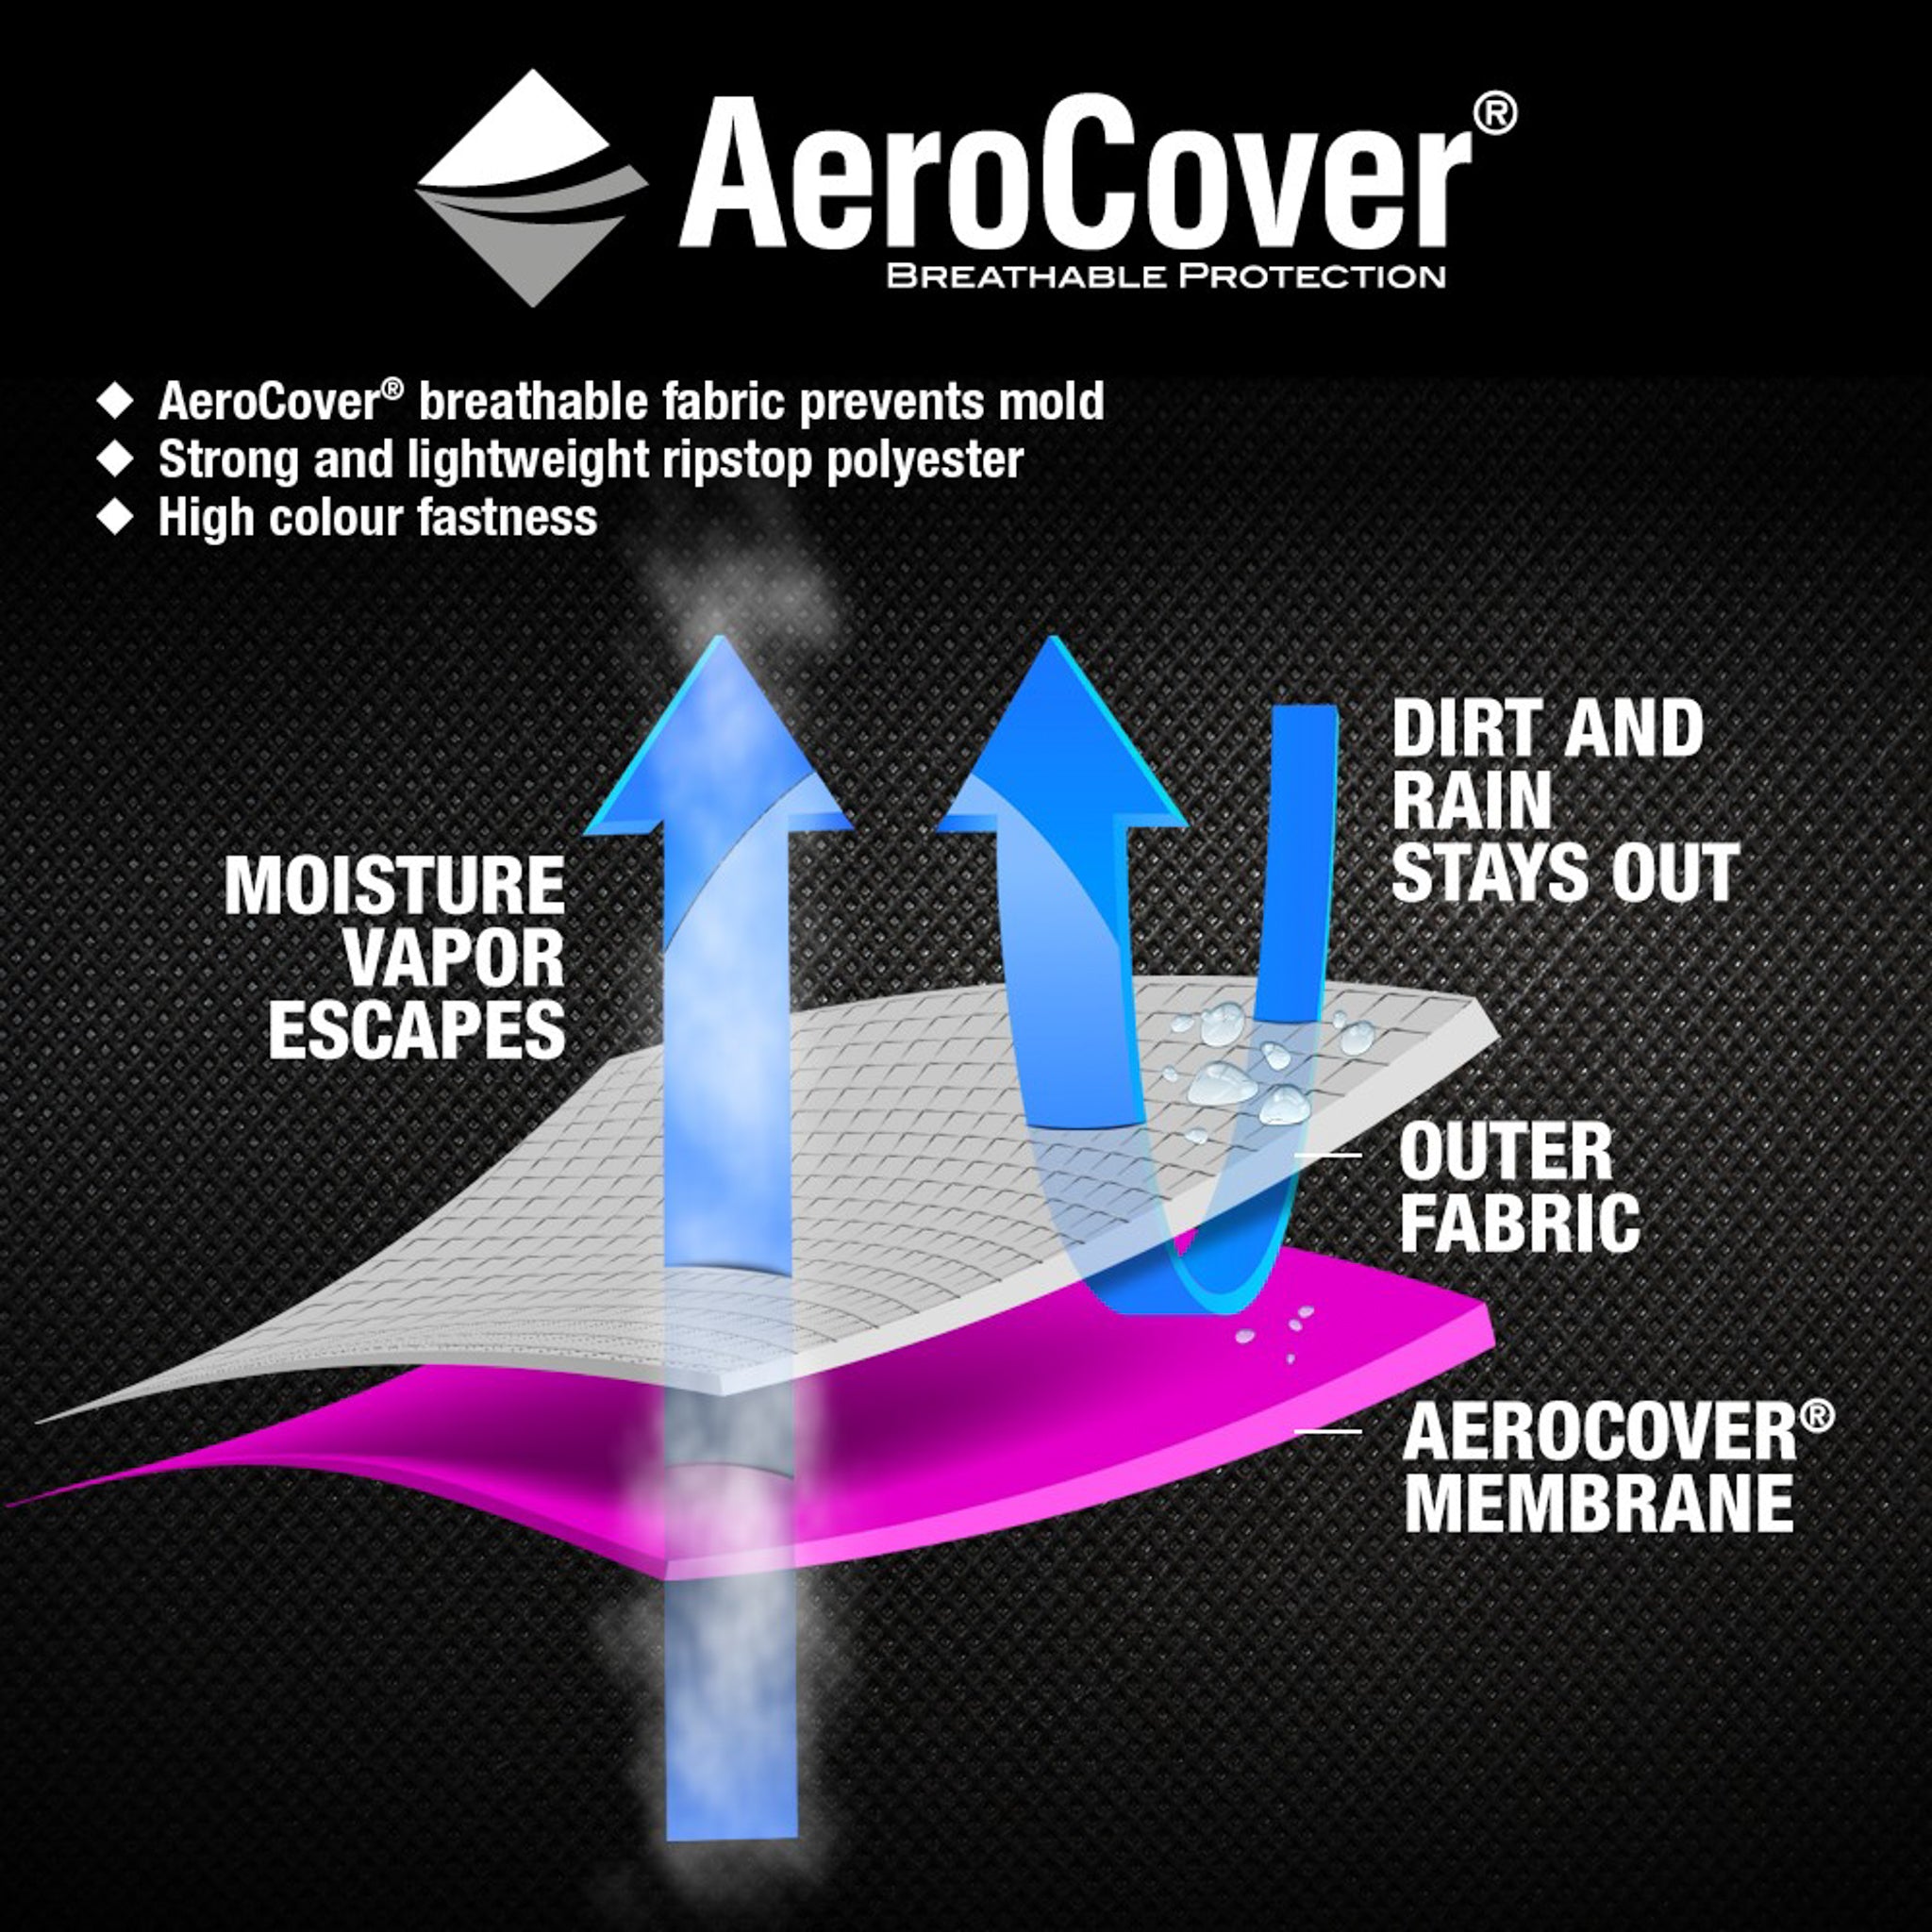 AeroCover - Cushion Bag 175 x 80 x 60cm high